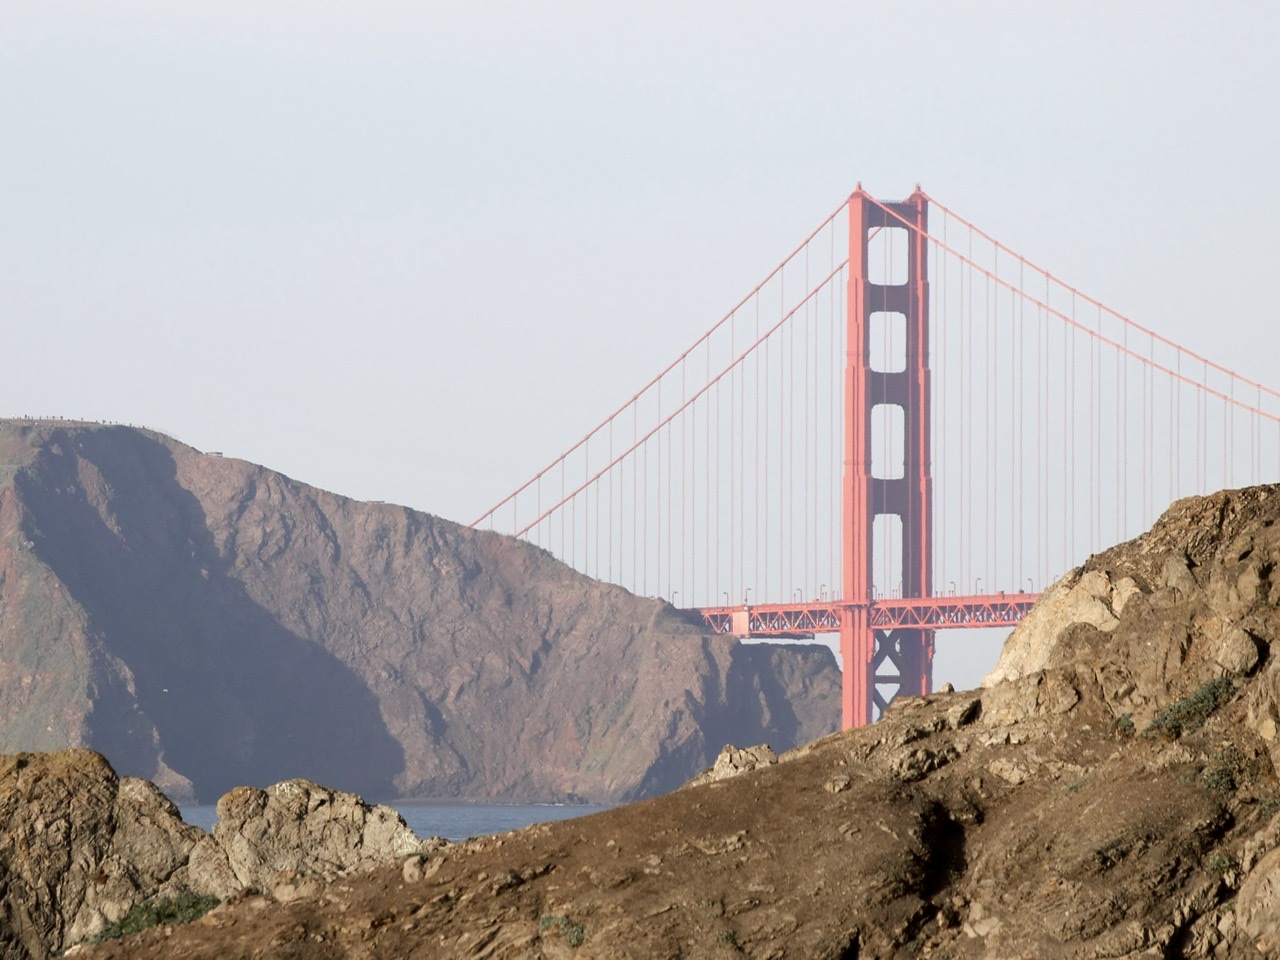 Glimpse of the Golden Gate Bridge